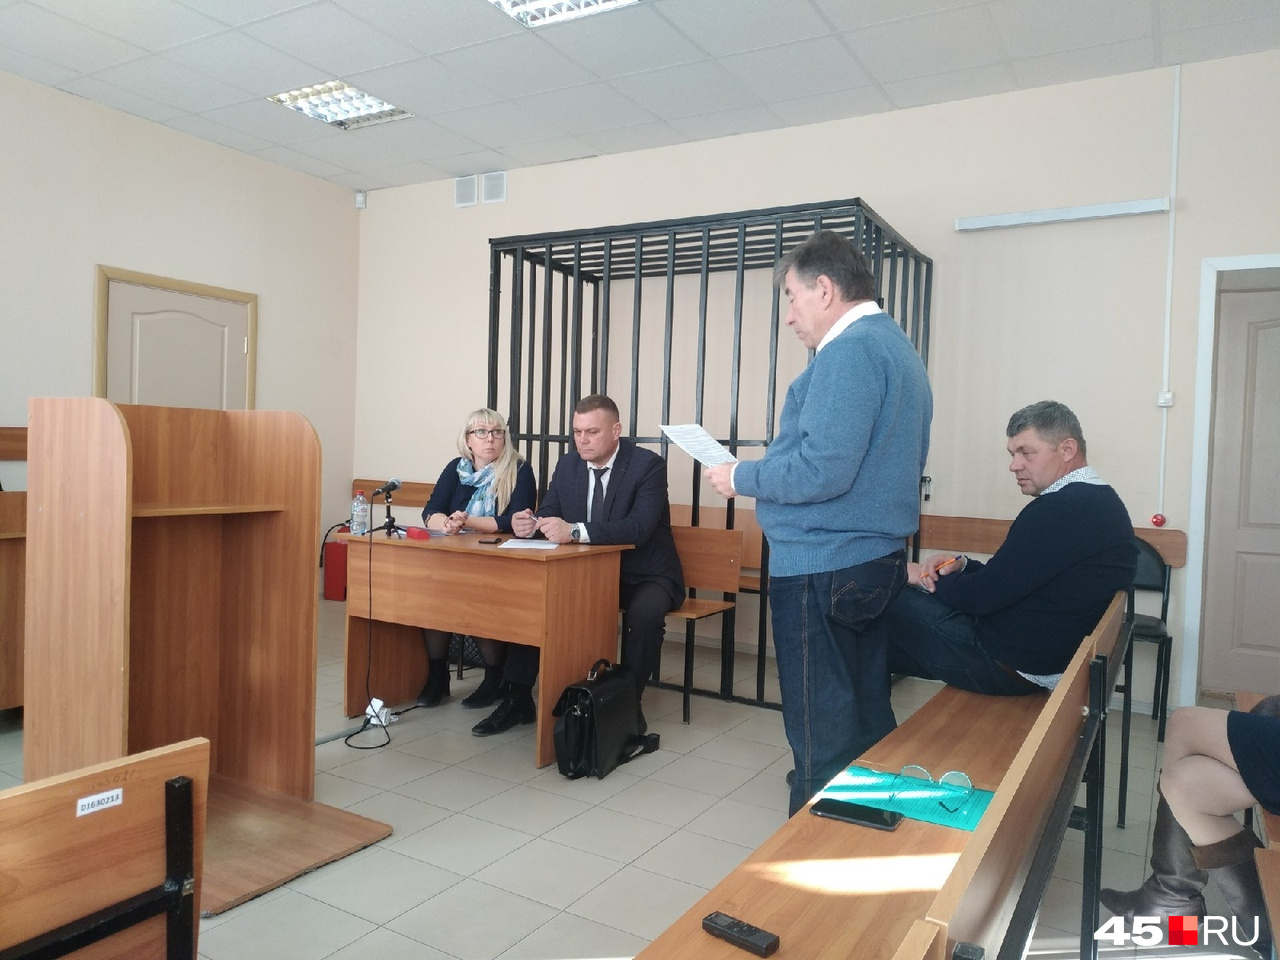 Дмитрий Коваленко попросил оправдать его по всем пунктам обвинения